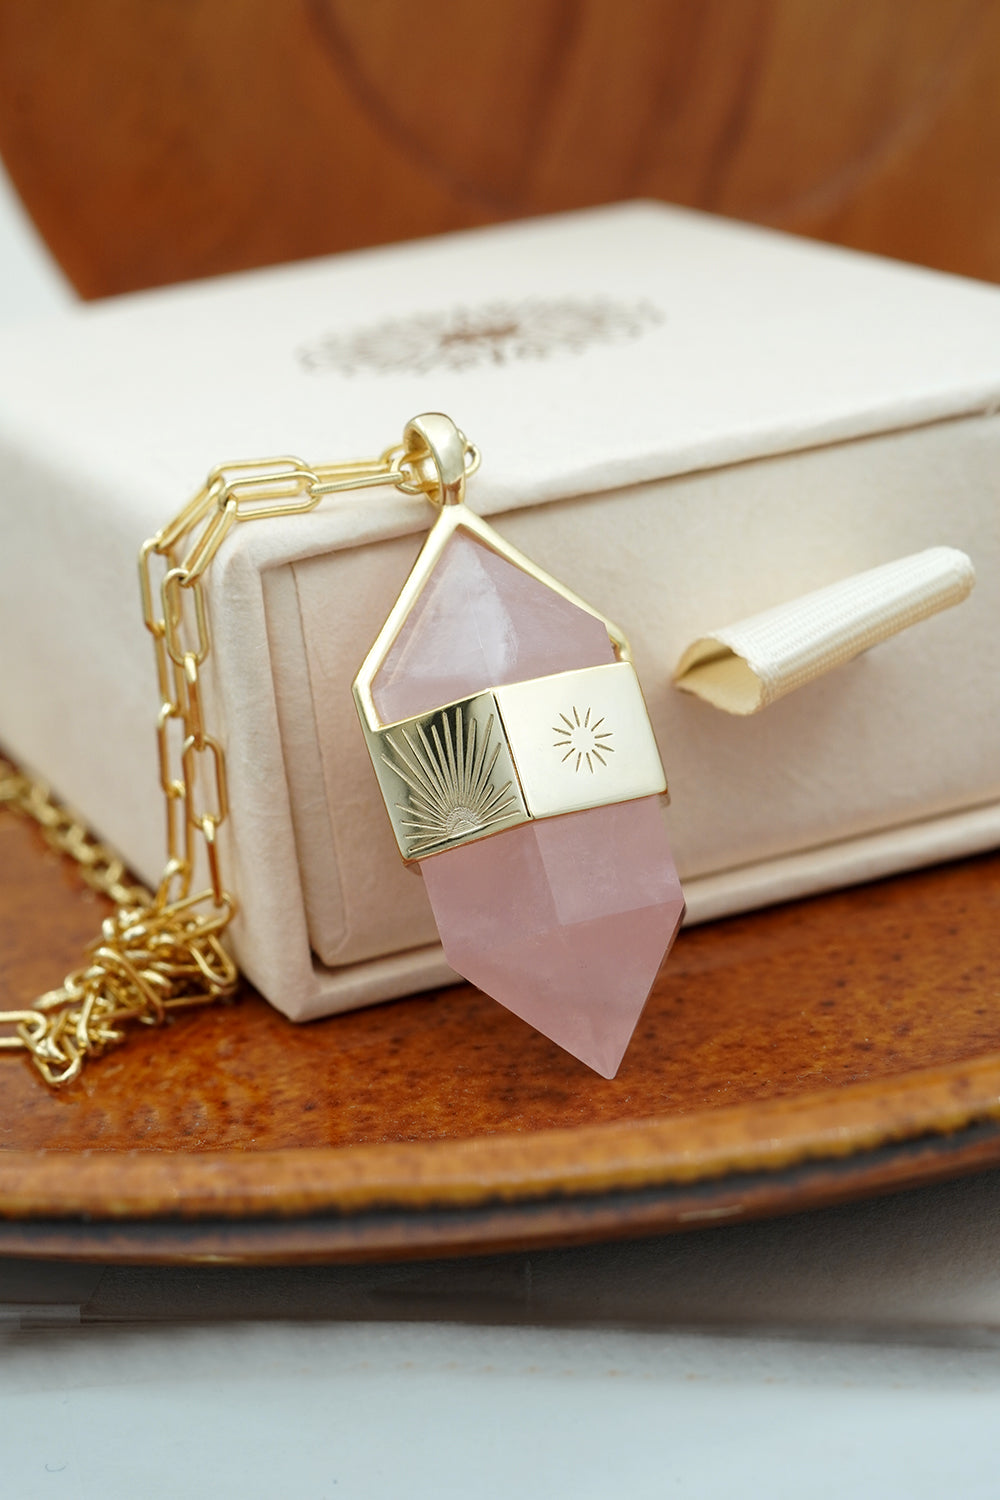 Rose Quartz Pendant Necklace and cream gift box